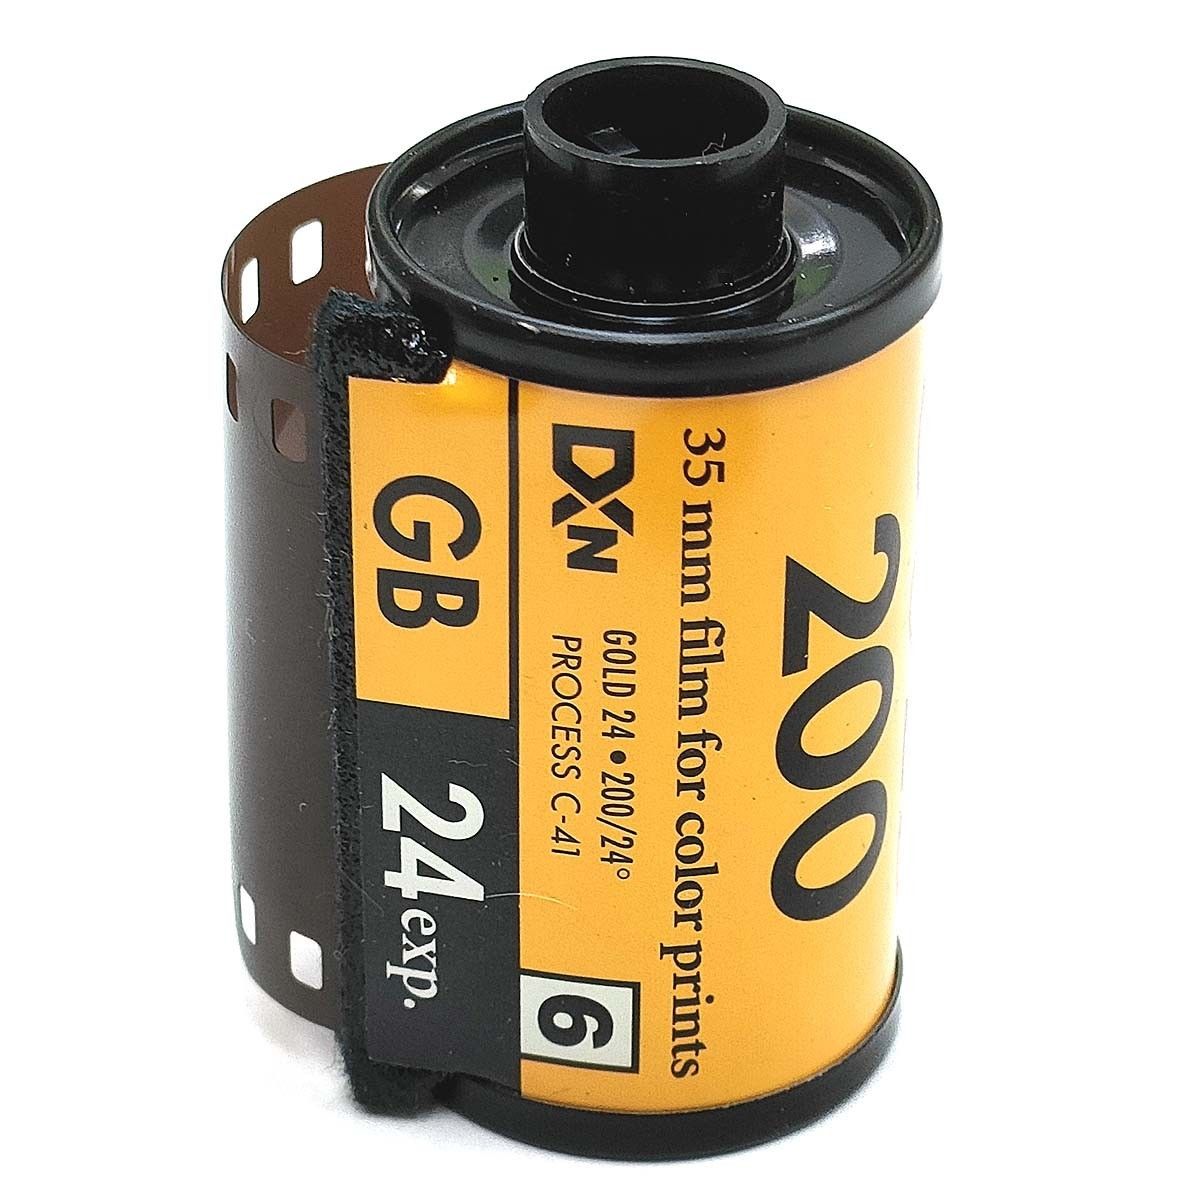 GOLD200-24枚撮【3本入】Kodak カラーネガフィルム ISO感度200 135/35mm コダック 新品